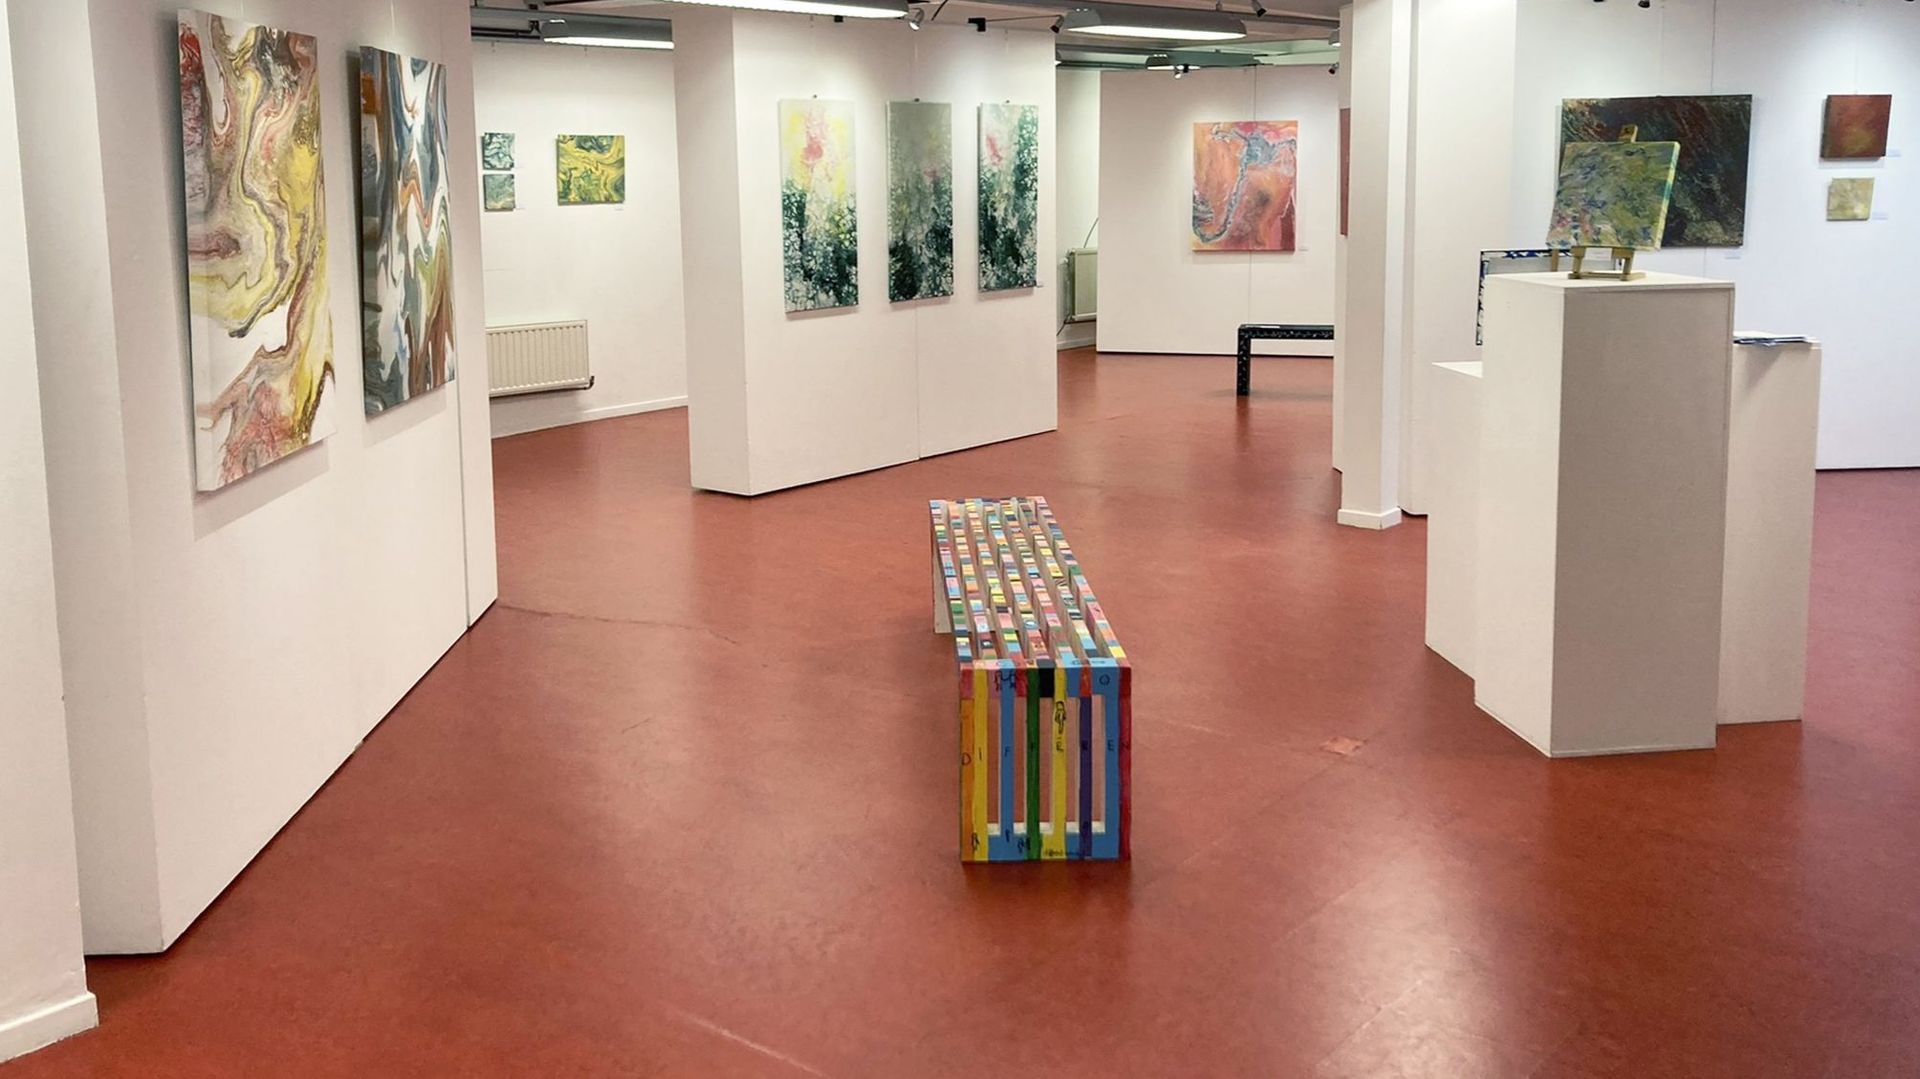 Le Centre culturel de Bastogne présente le travail coloré de deux artistes de la région avec l’exposition "Éclats"